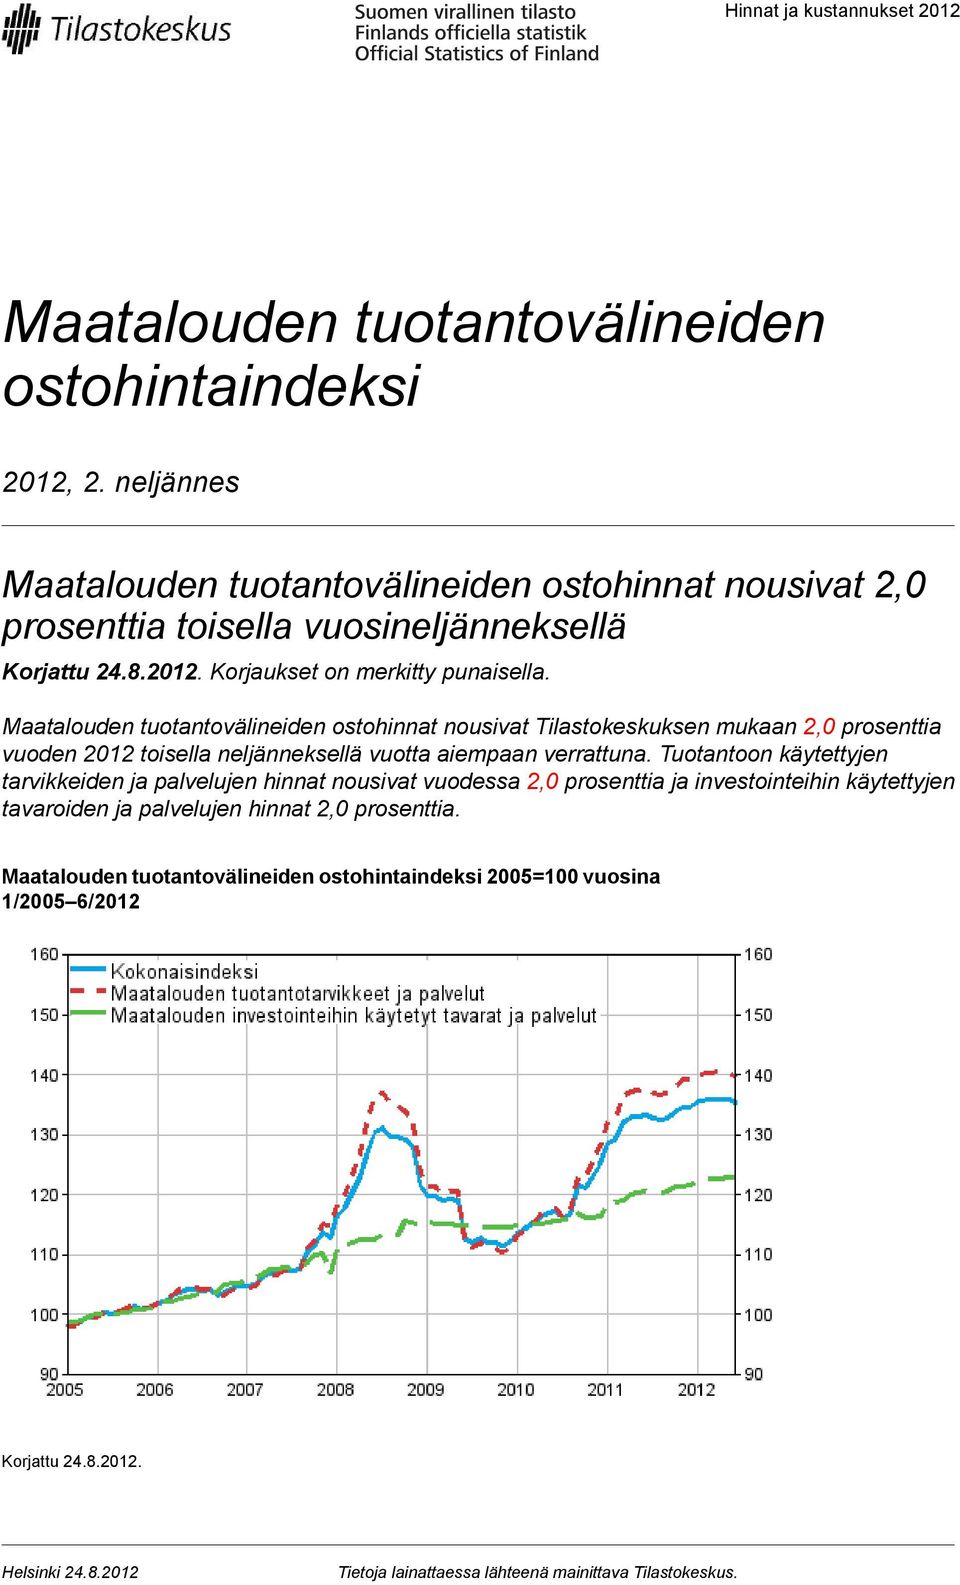 Maatalouden tuotantovälineiden ostohinnat nousivat Tilastokeskuksen mukaan prosenttia vuoden 2012 toisella neljänneksellä vuotta aiempaan verrattuna.